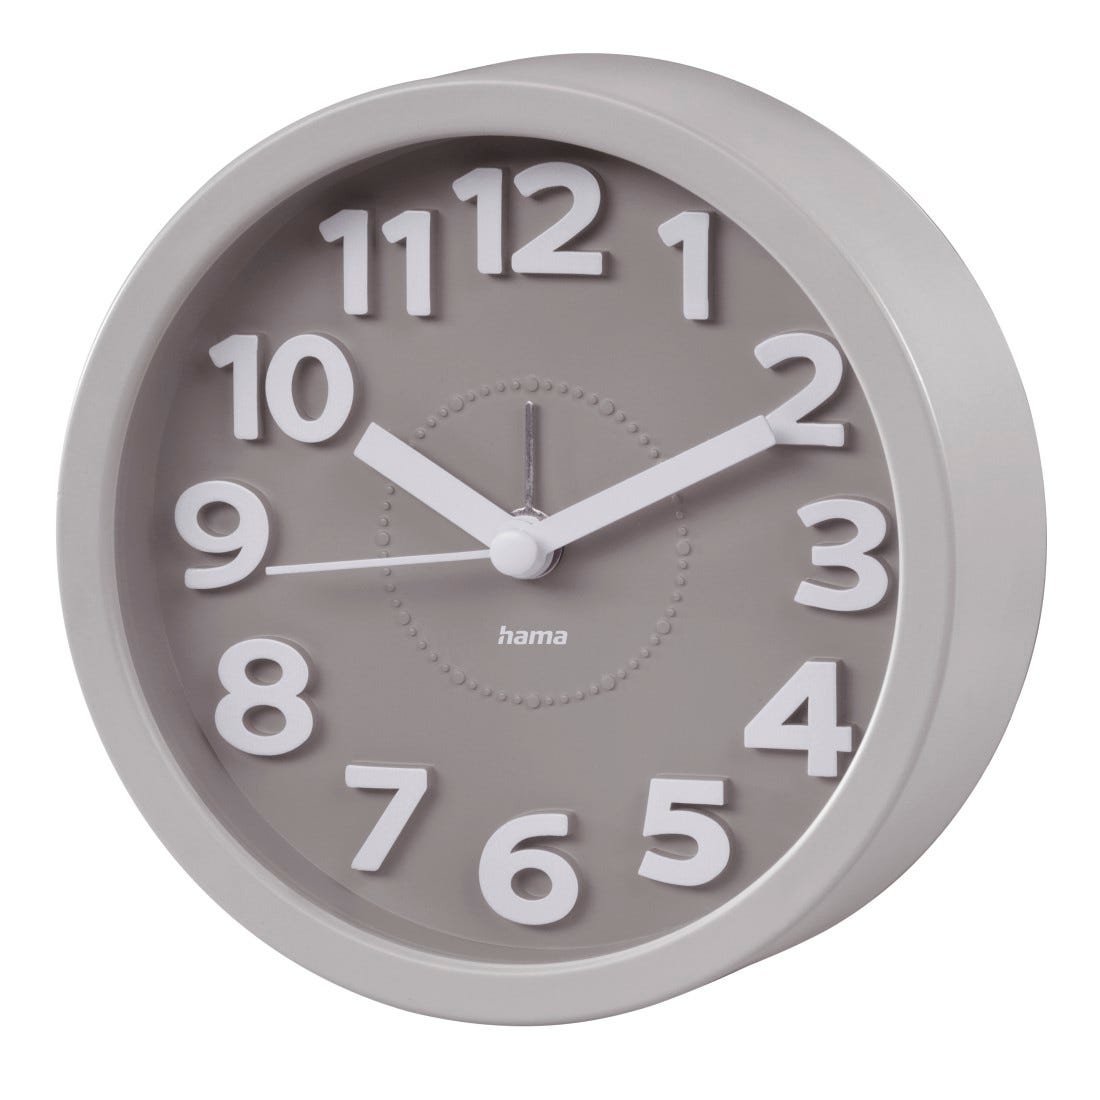 Hama  Reloj despertador analógico (Reloj de mesa estilo retro